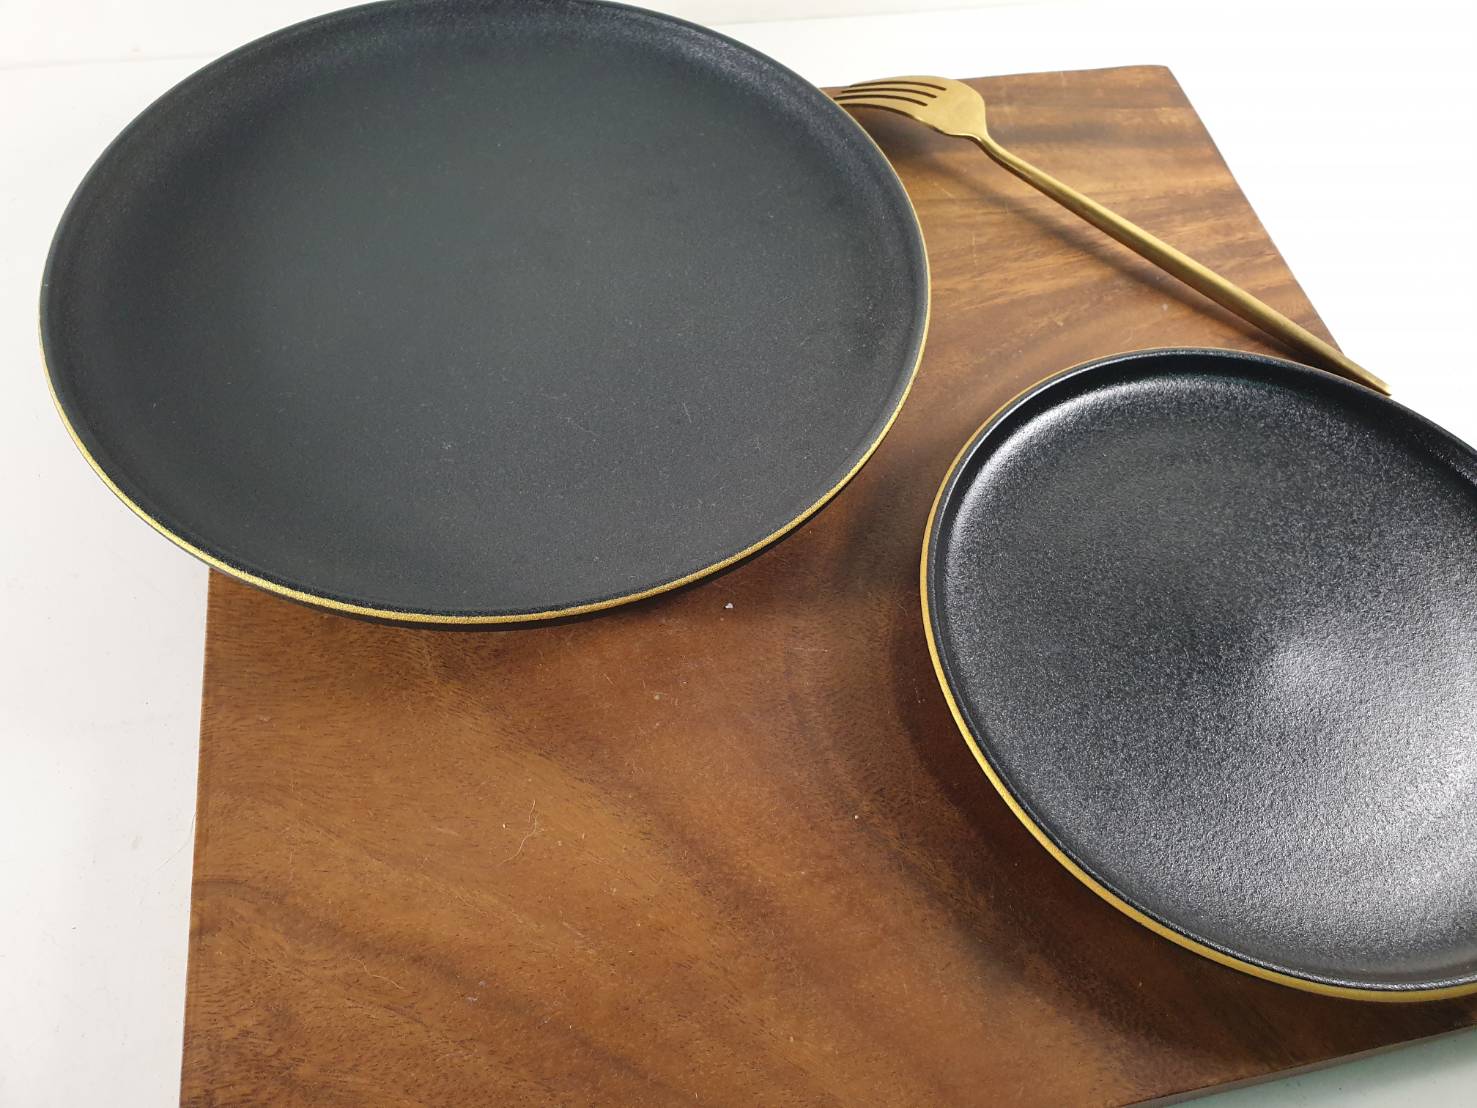 北歐風 黑色磨砂餐盤 居家餐廚擺設 質感裝飾 餐盤 盤子  10、7.5吋弧邊盤(金邊) | 第一張展示圖